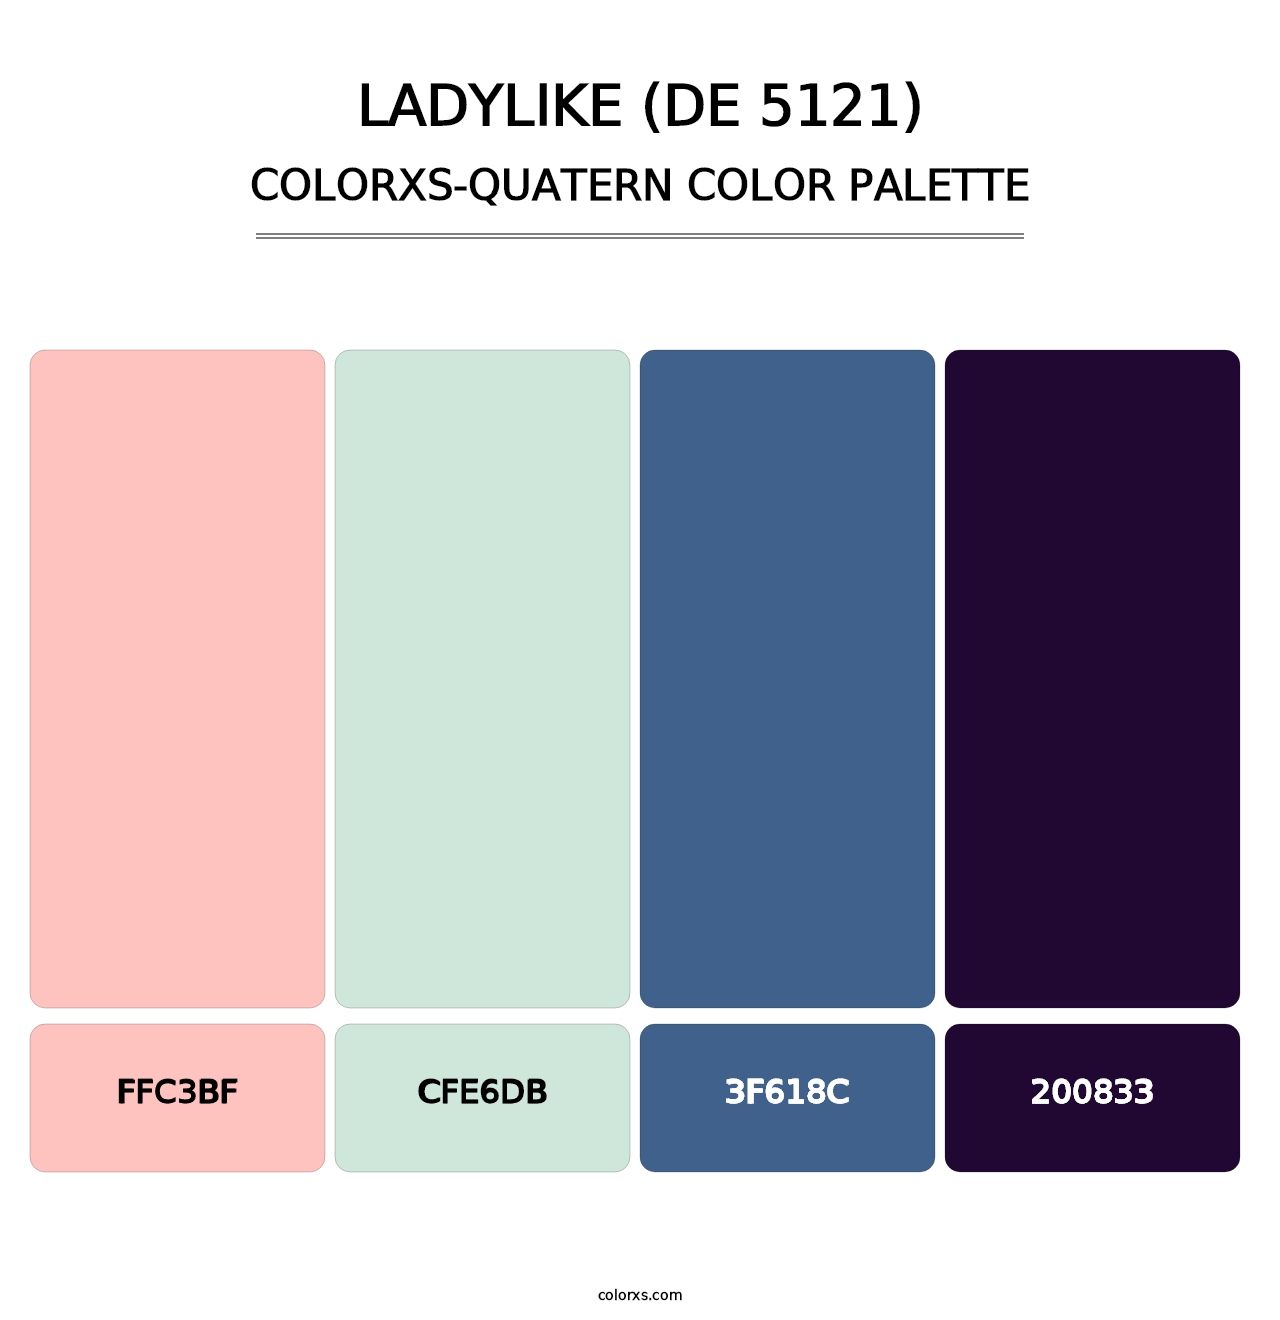 Ladylike (DE 5121) - Colorxs Quatern Palette